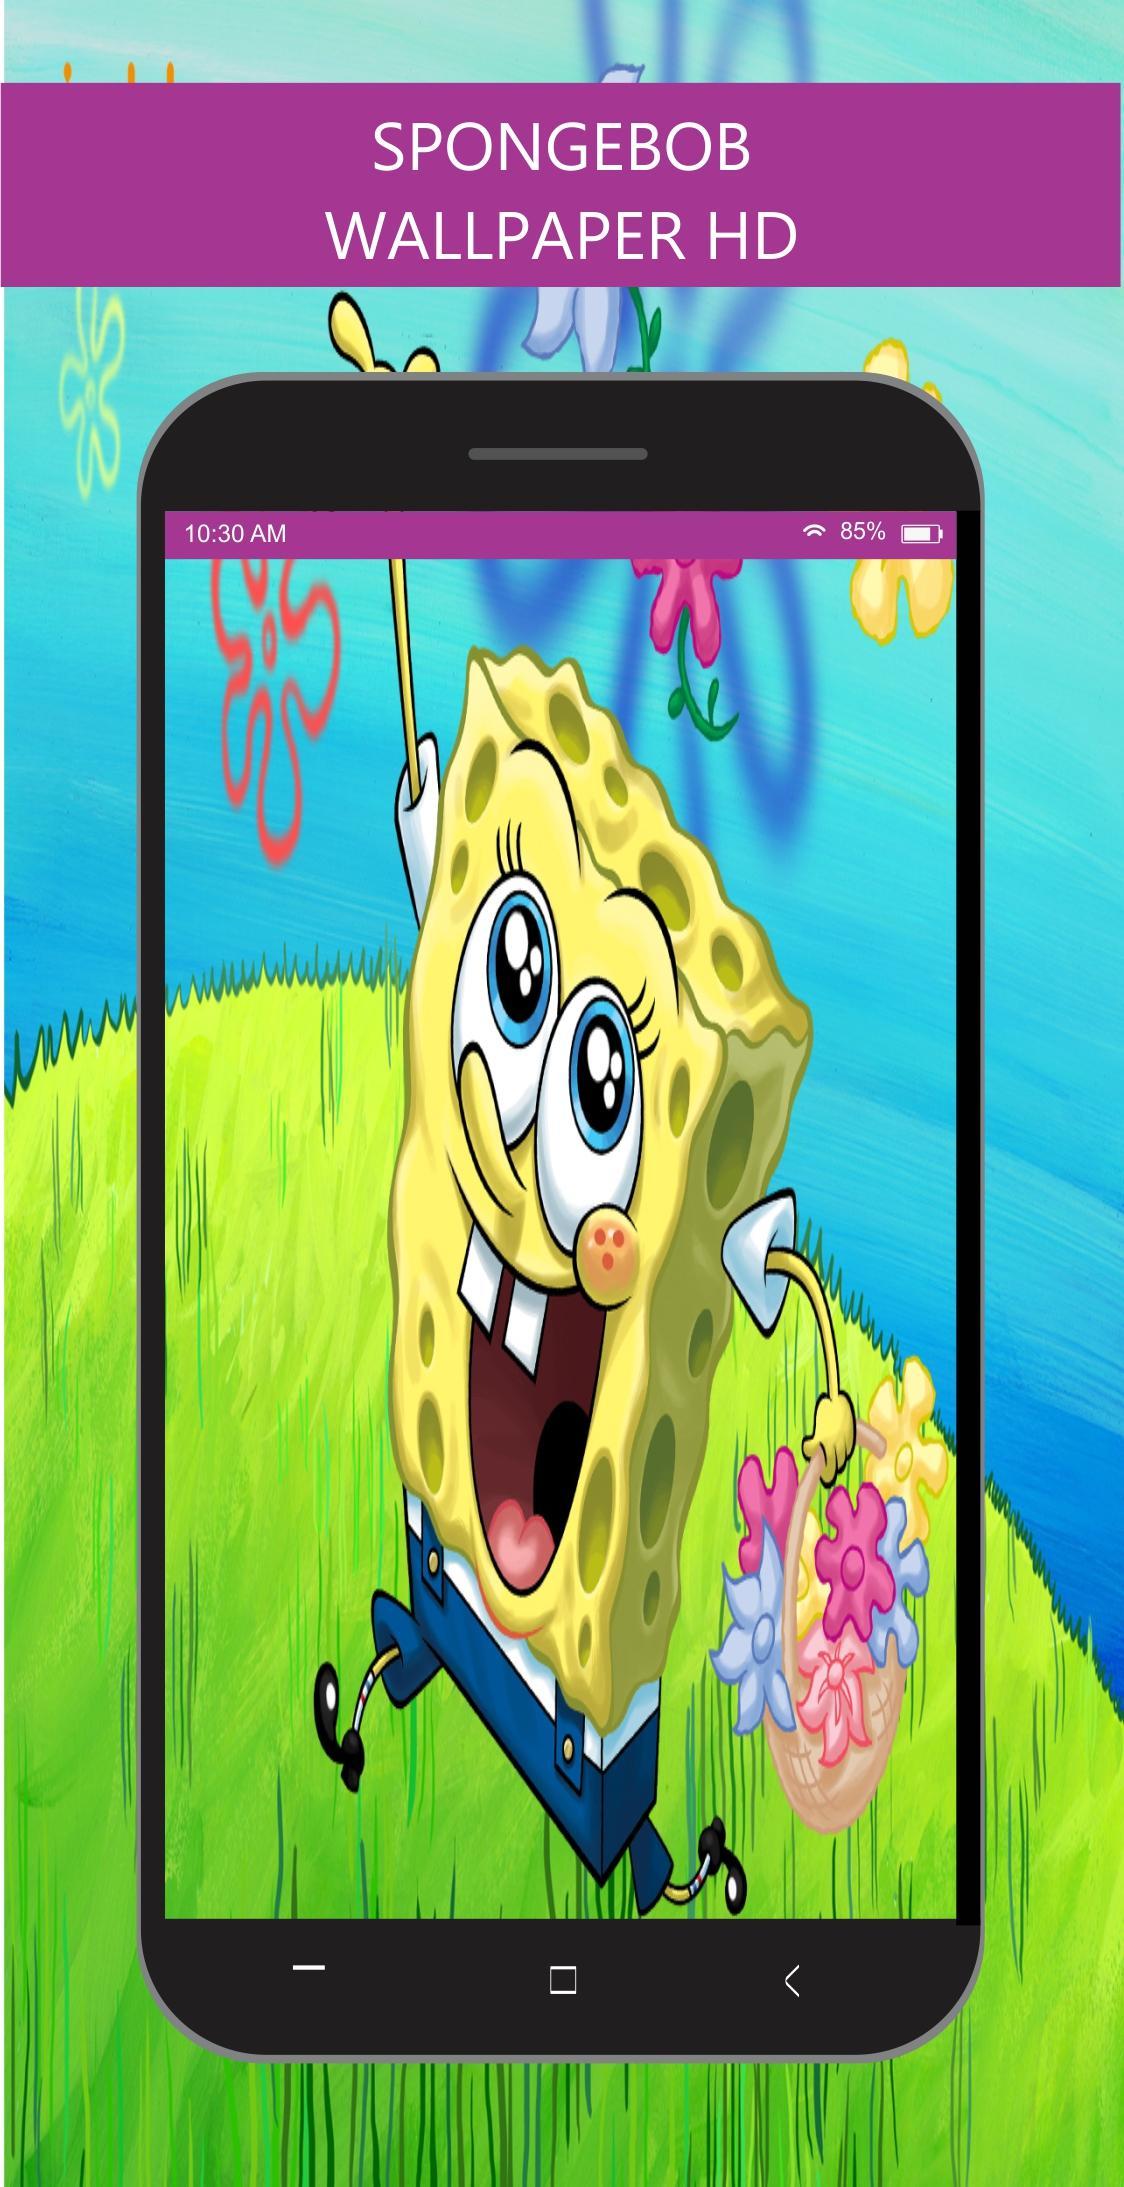 650 Gambar Meme Kartun Spongebob Gratis Terbaru Gambar Kantun